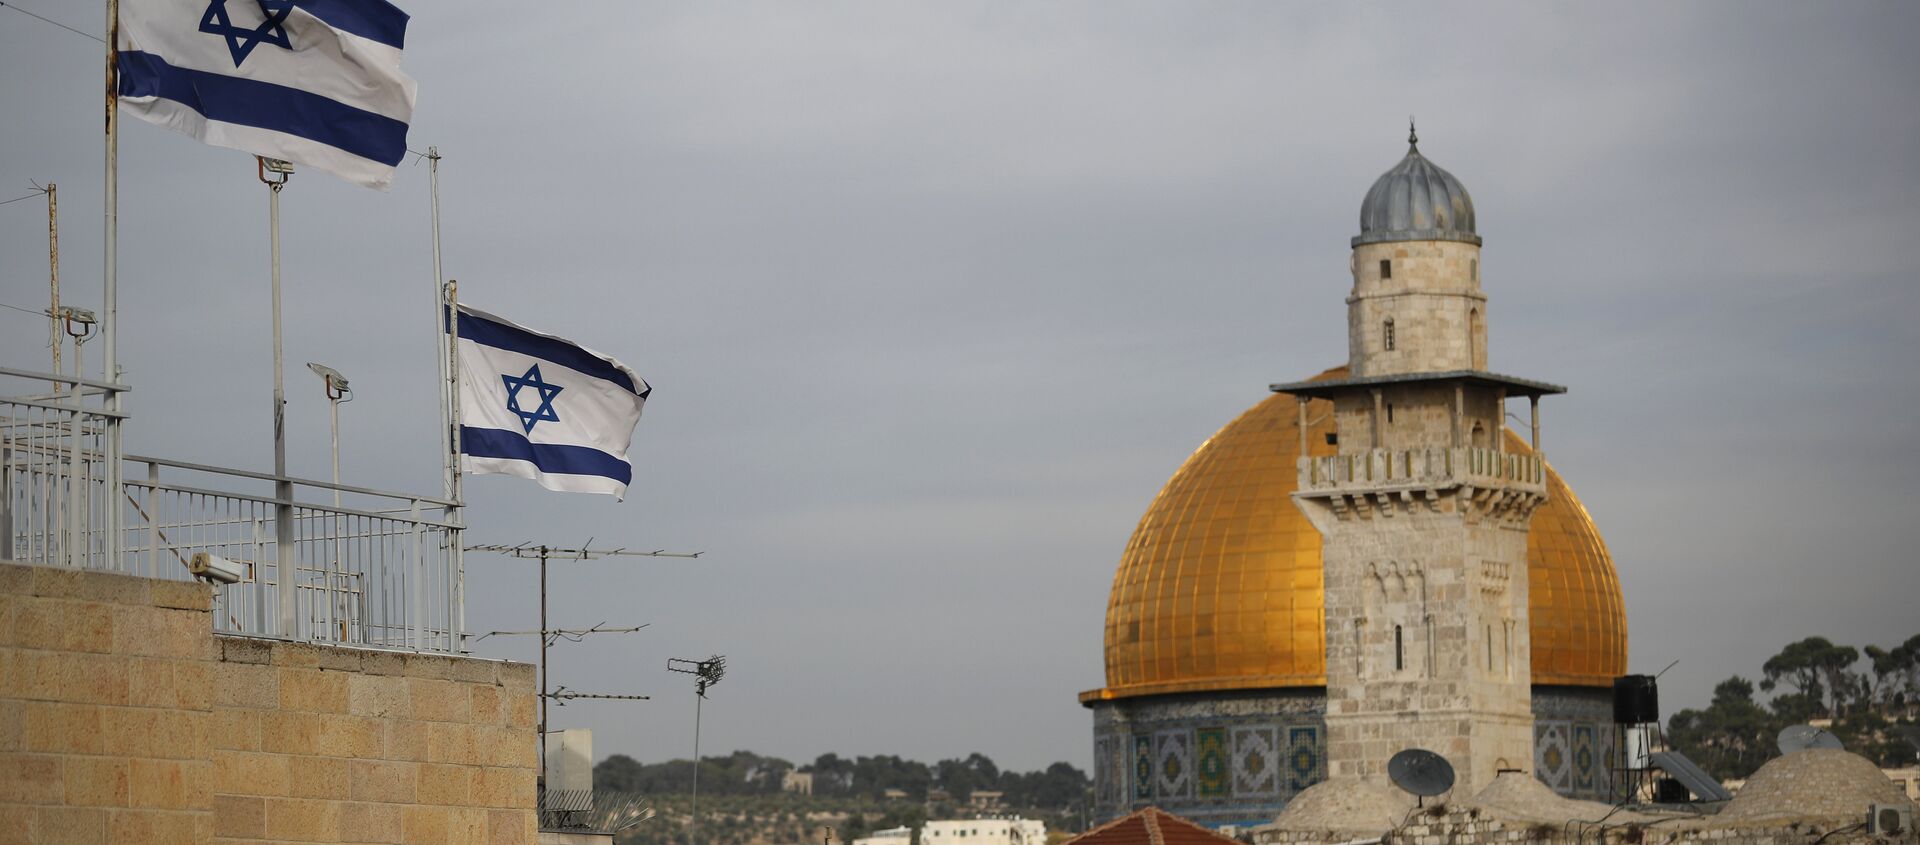 أعلام إسرائيلية على خلفية مسجد قبة الصخرة، القدس 5 ديسمبر/ كانون الأول 2017 - سبوتنيك عربي, 1920, 27.02.2021